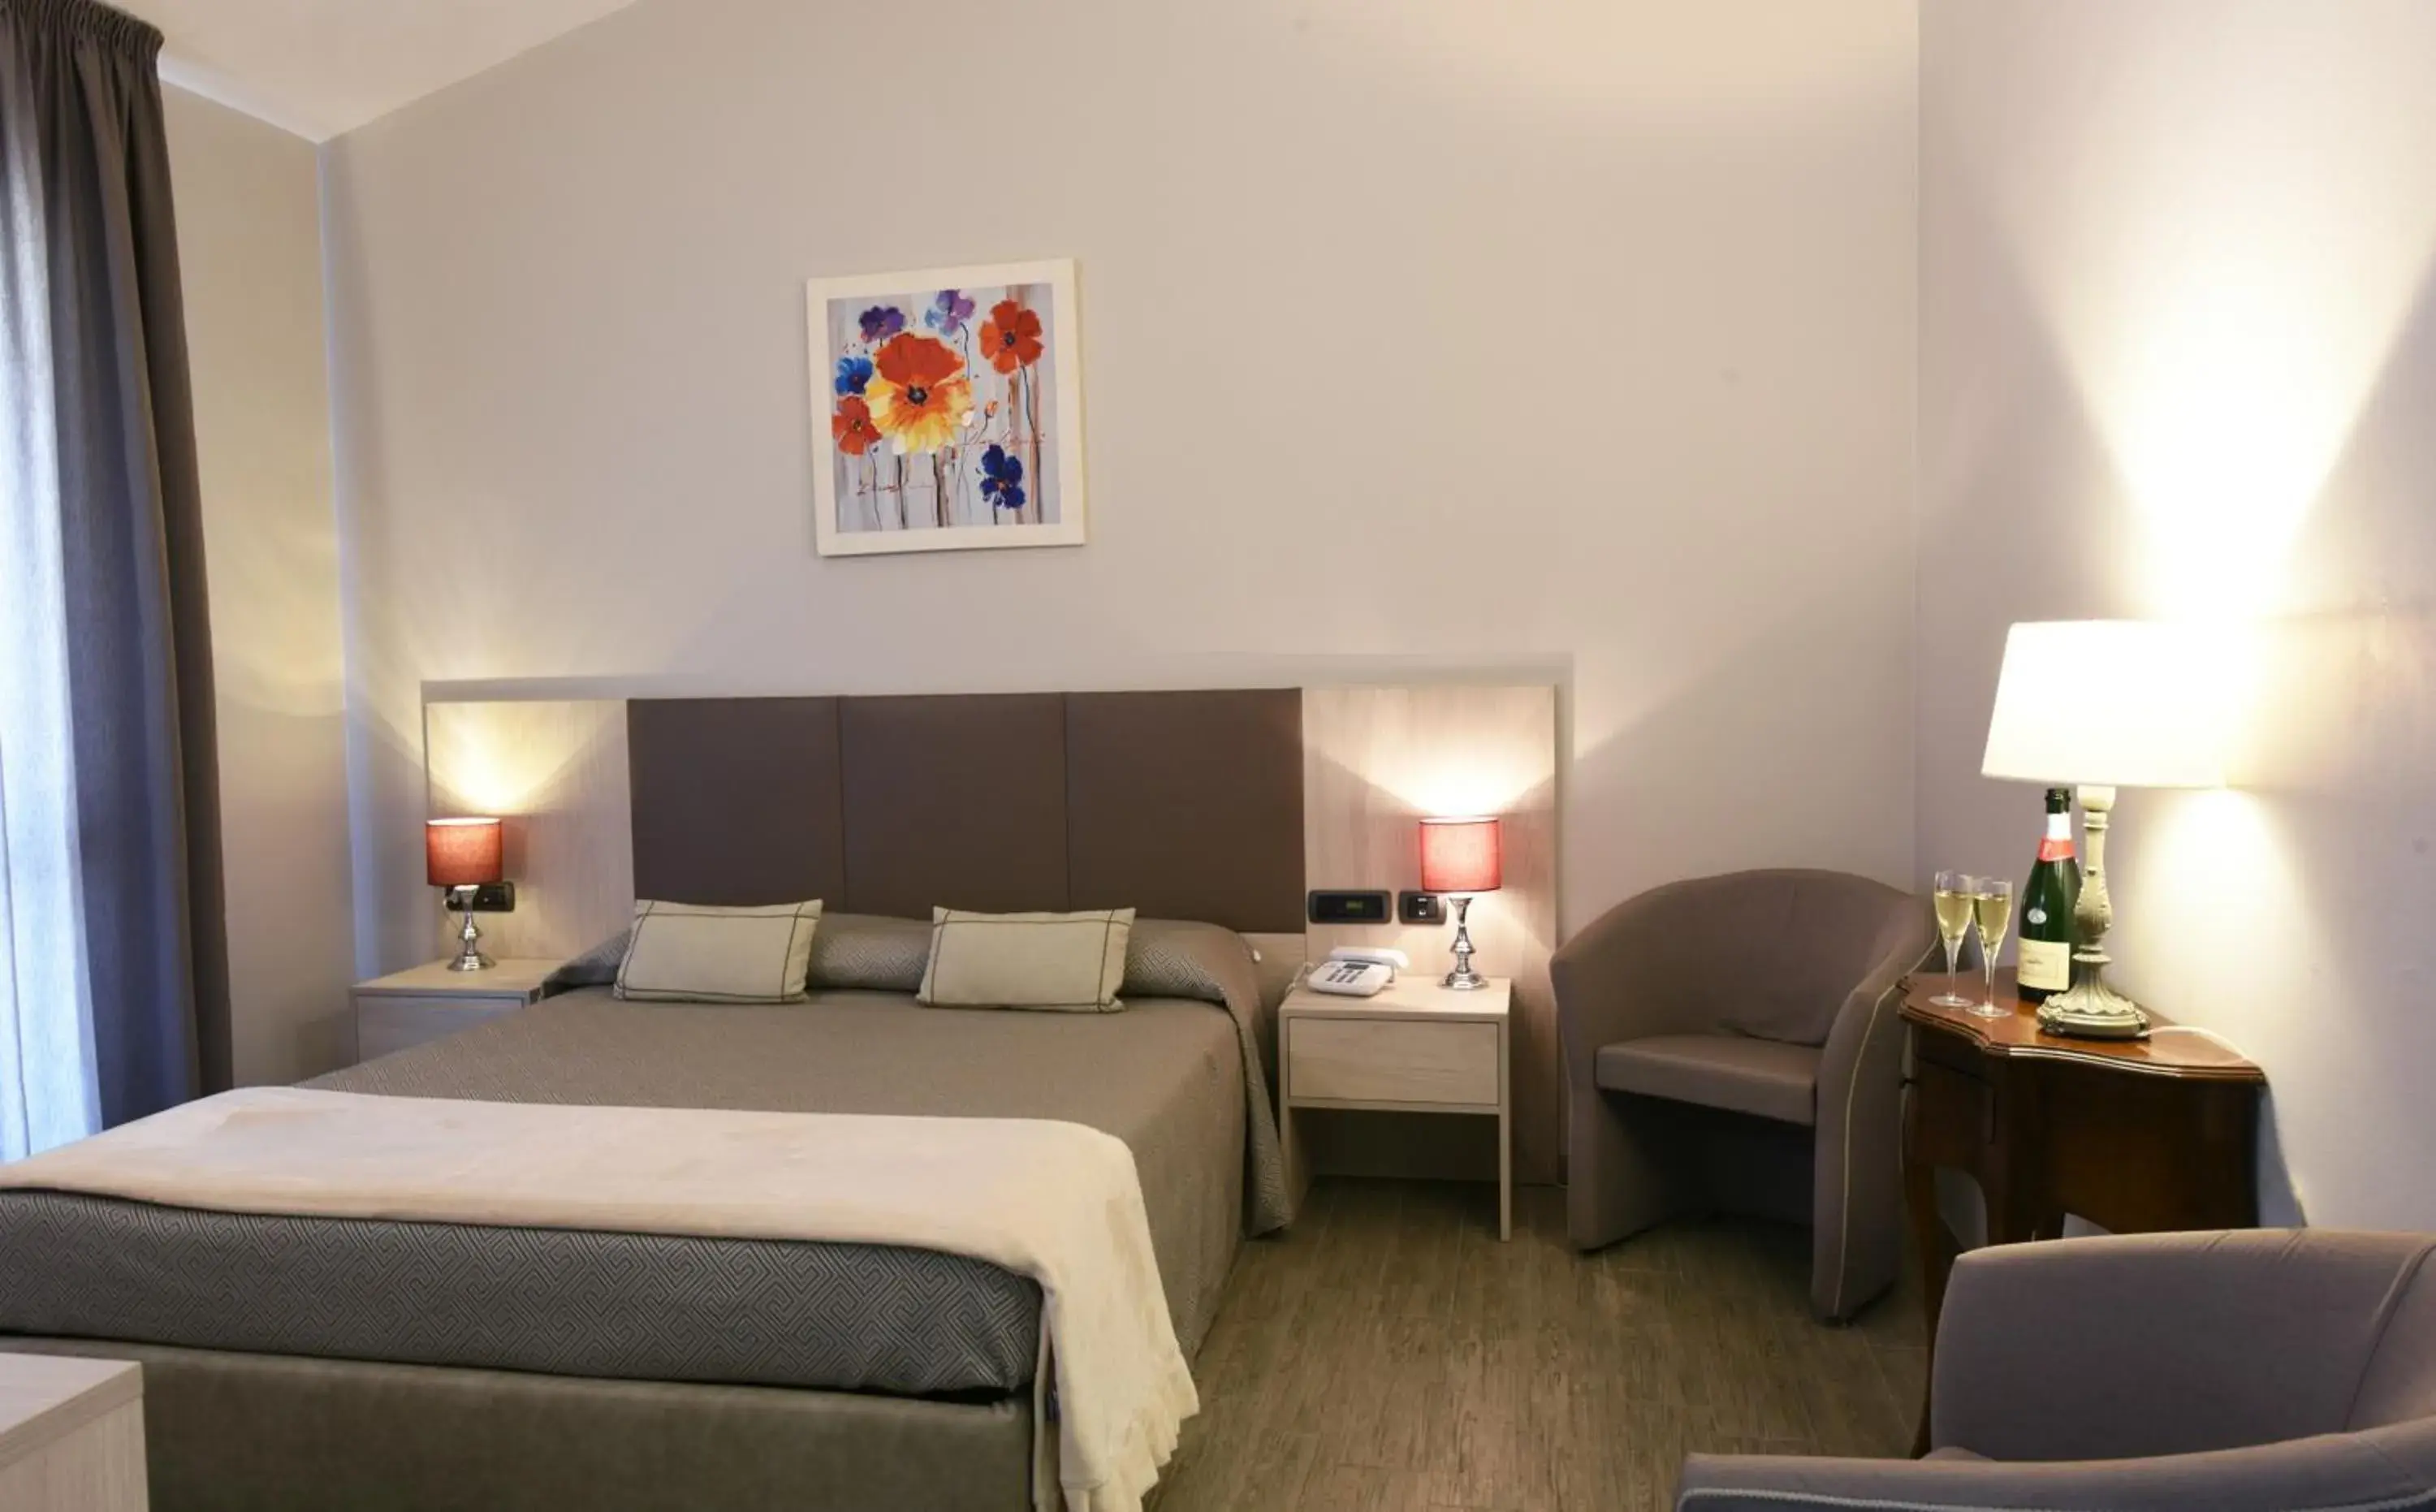 Bedroom, Room Photo in Hotel Ulivi